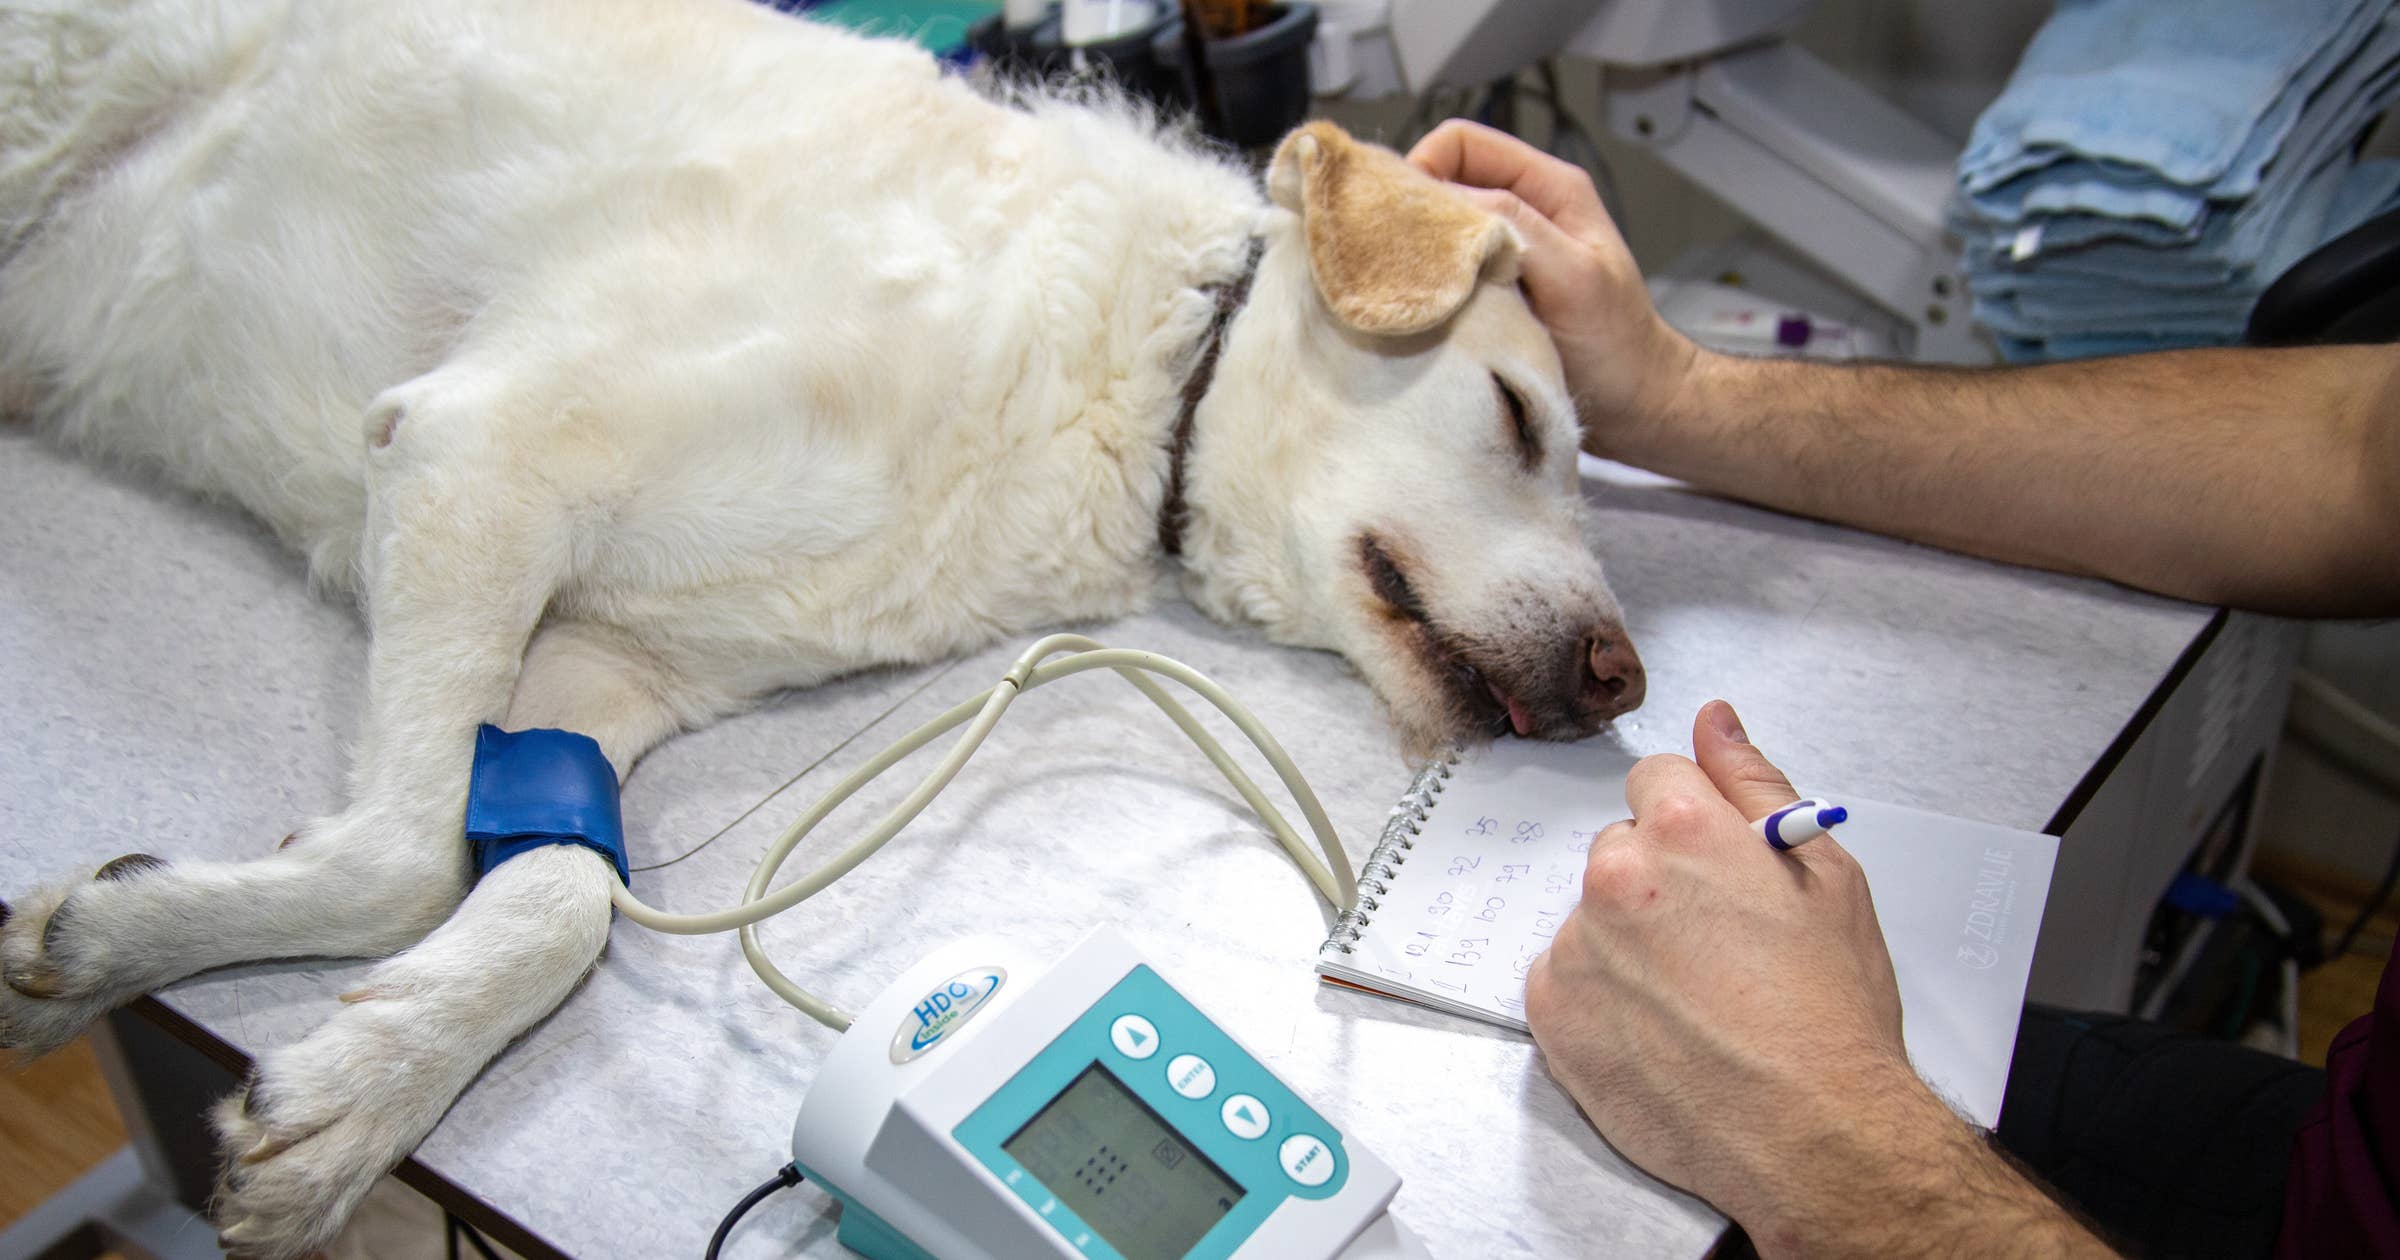 Удаление голосовых связок у собаки. Ветеринар. Ветеринарная клиника. Реабилитация собак.